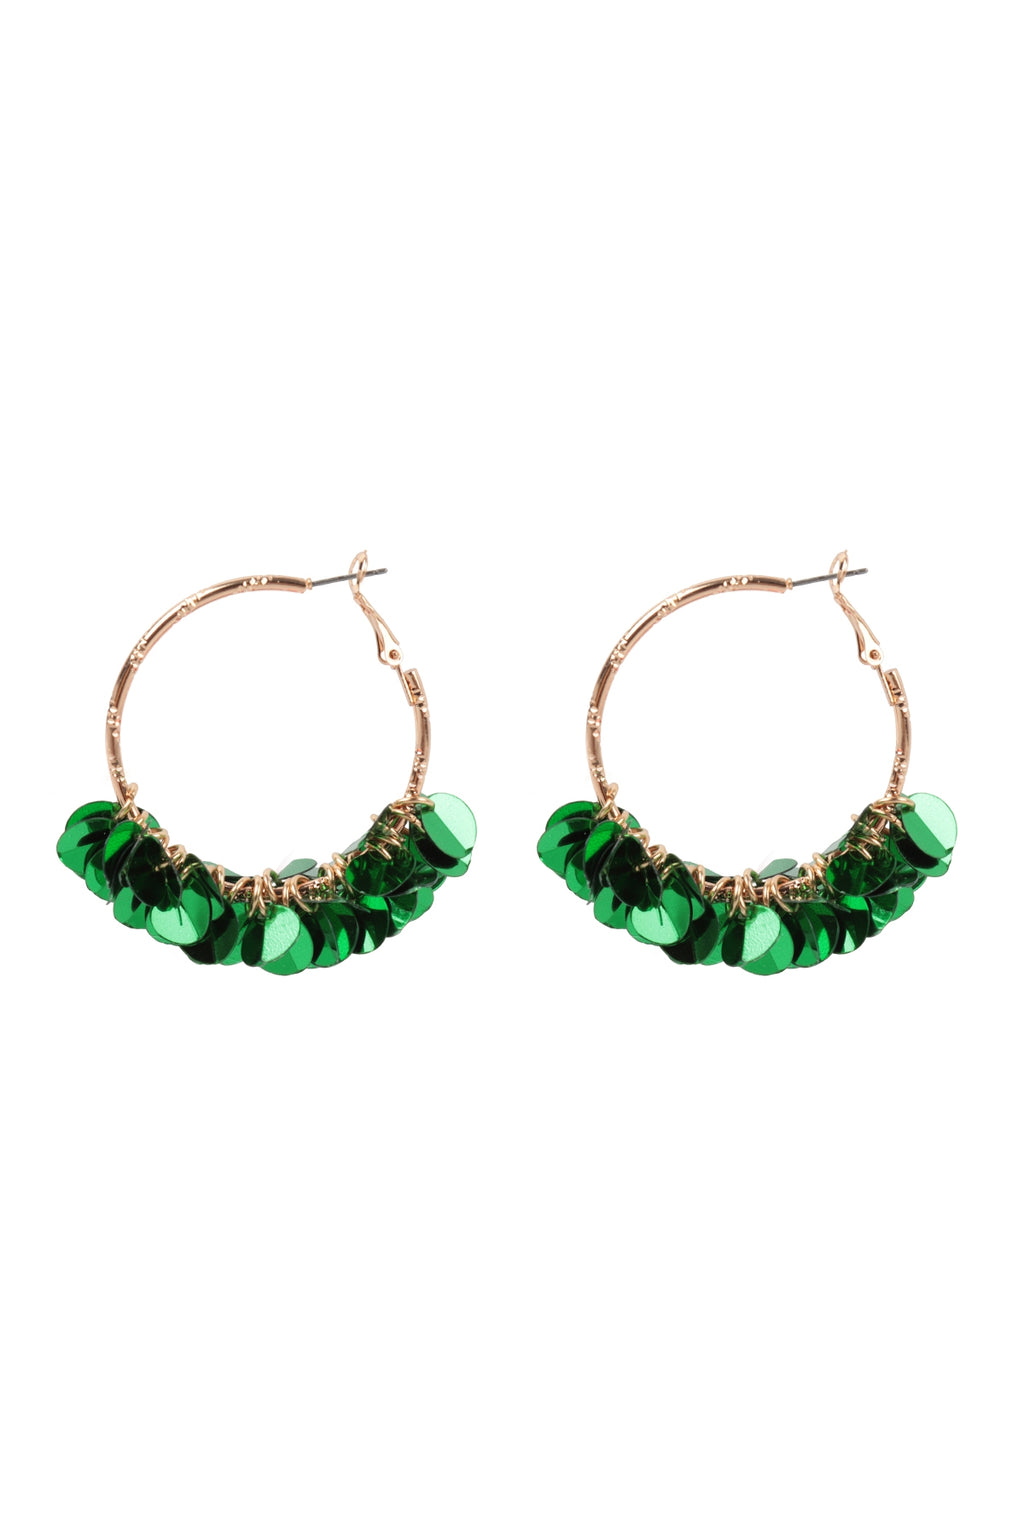 1.75" Sequin Dangle Hoop Earrings Green - Pack of 6